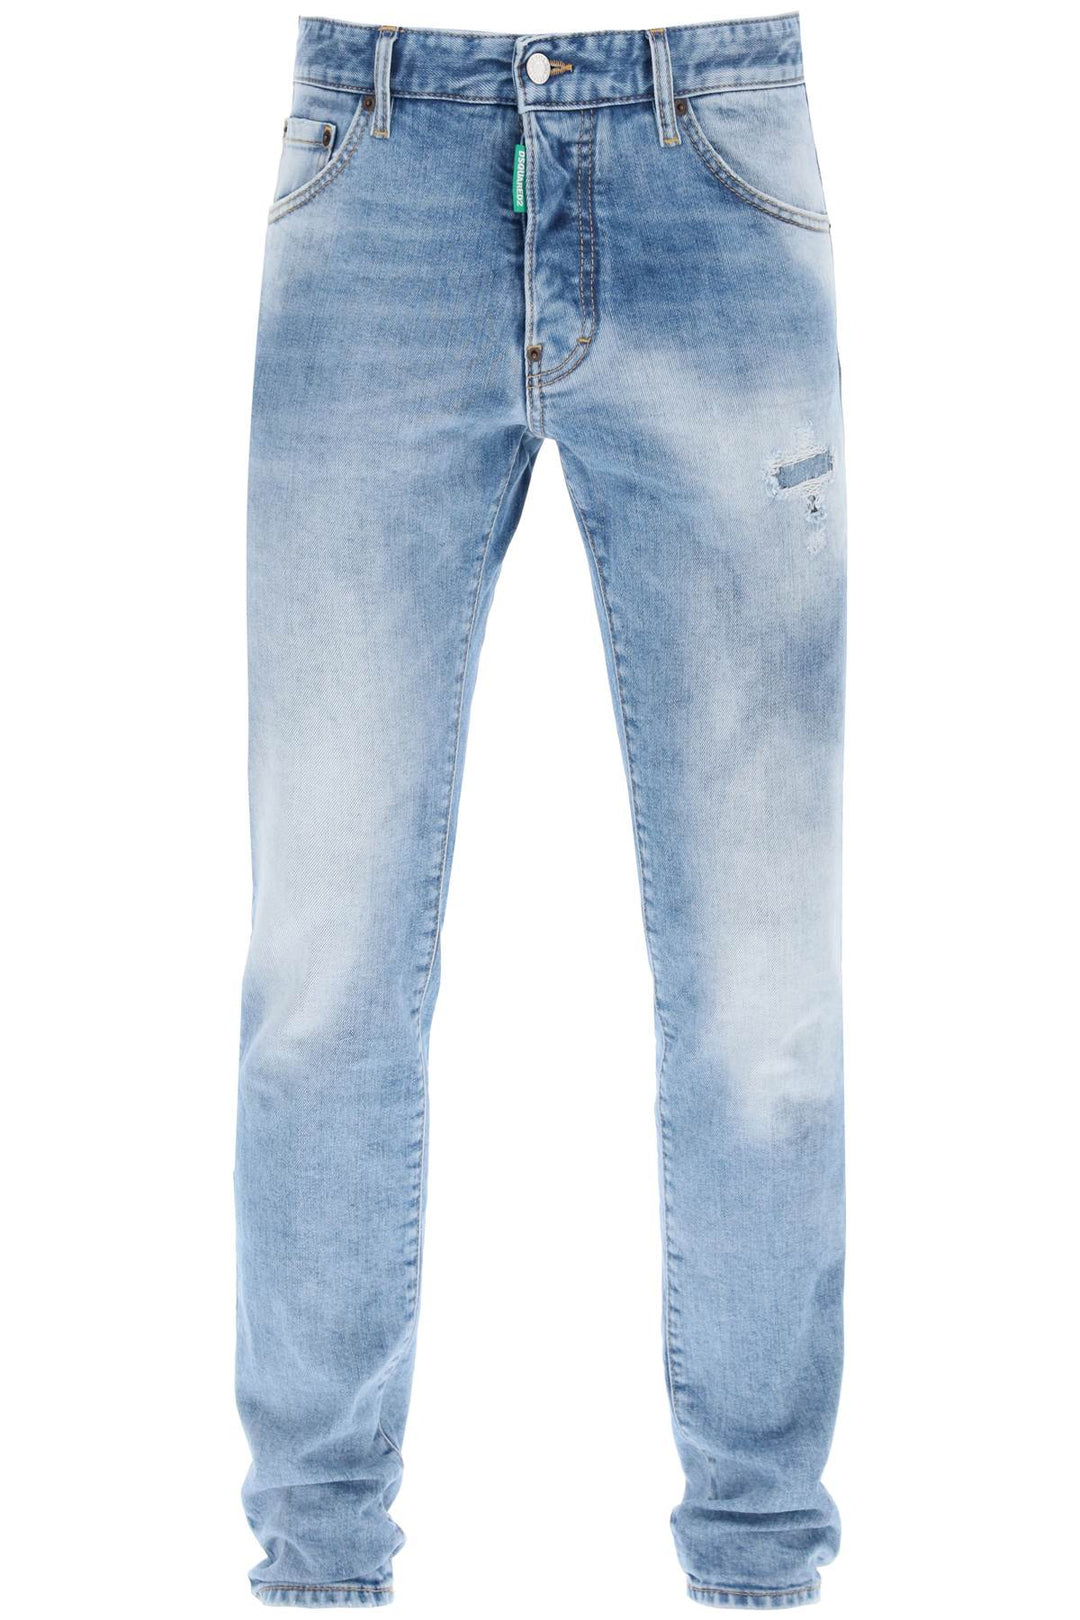 Jeans 'Cool Guy' Con Lavaggio Used Chiaro - Dsquared2 - Uomo